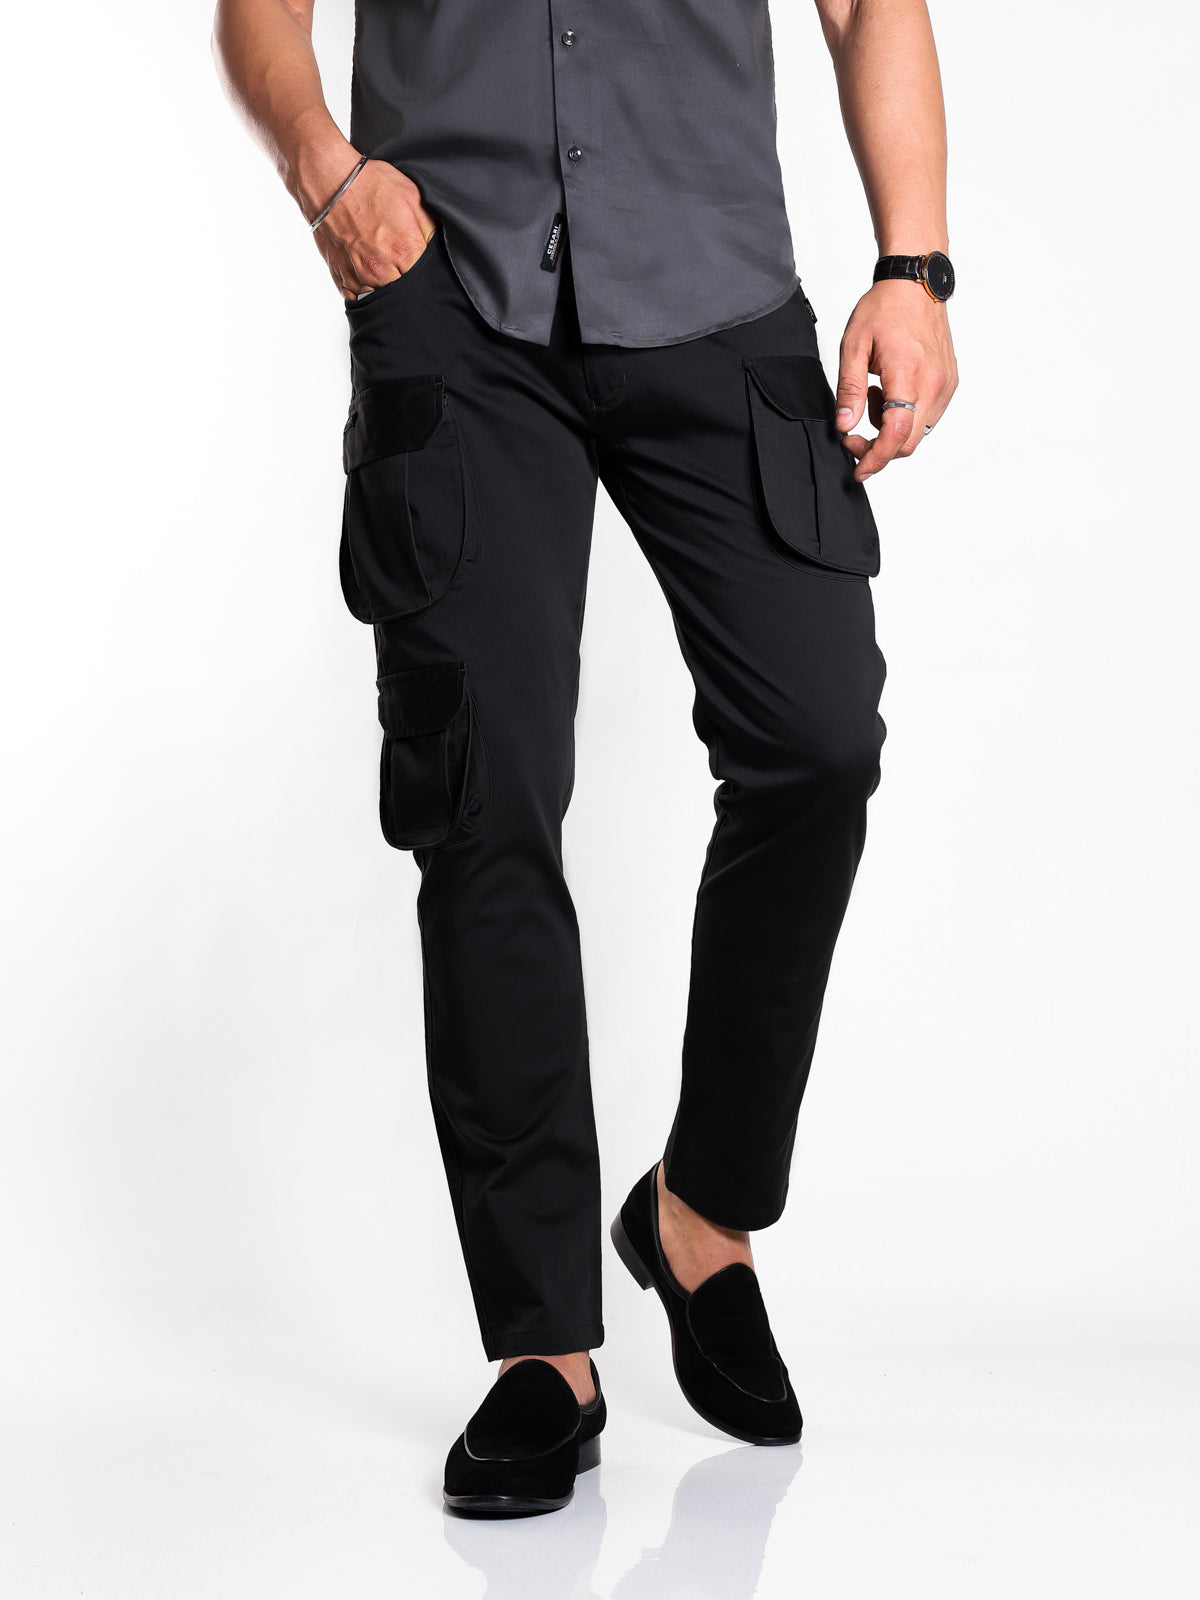 Buy Men's Trousers Online From Cesari